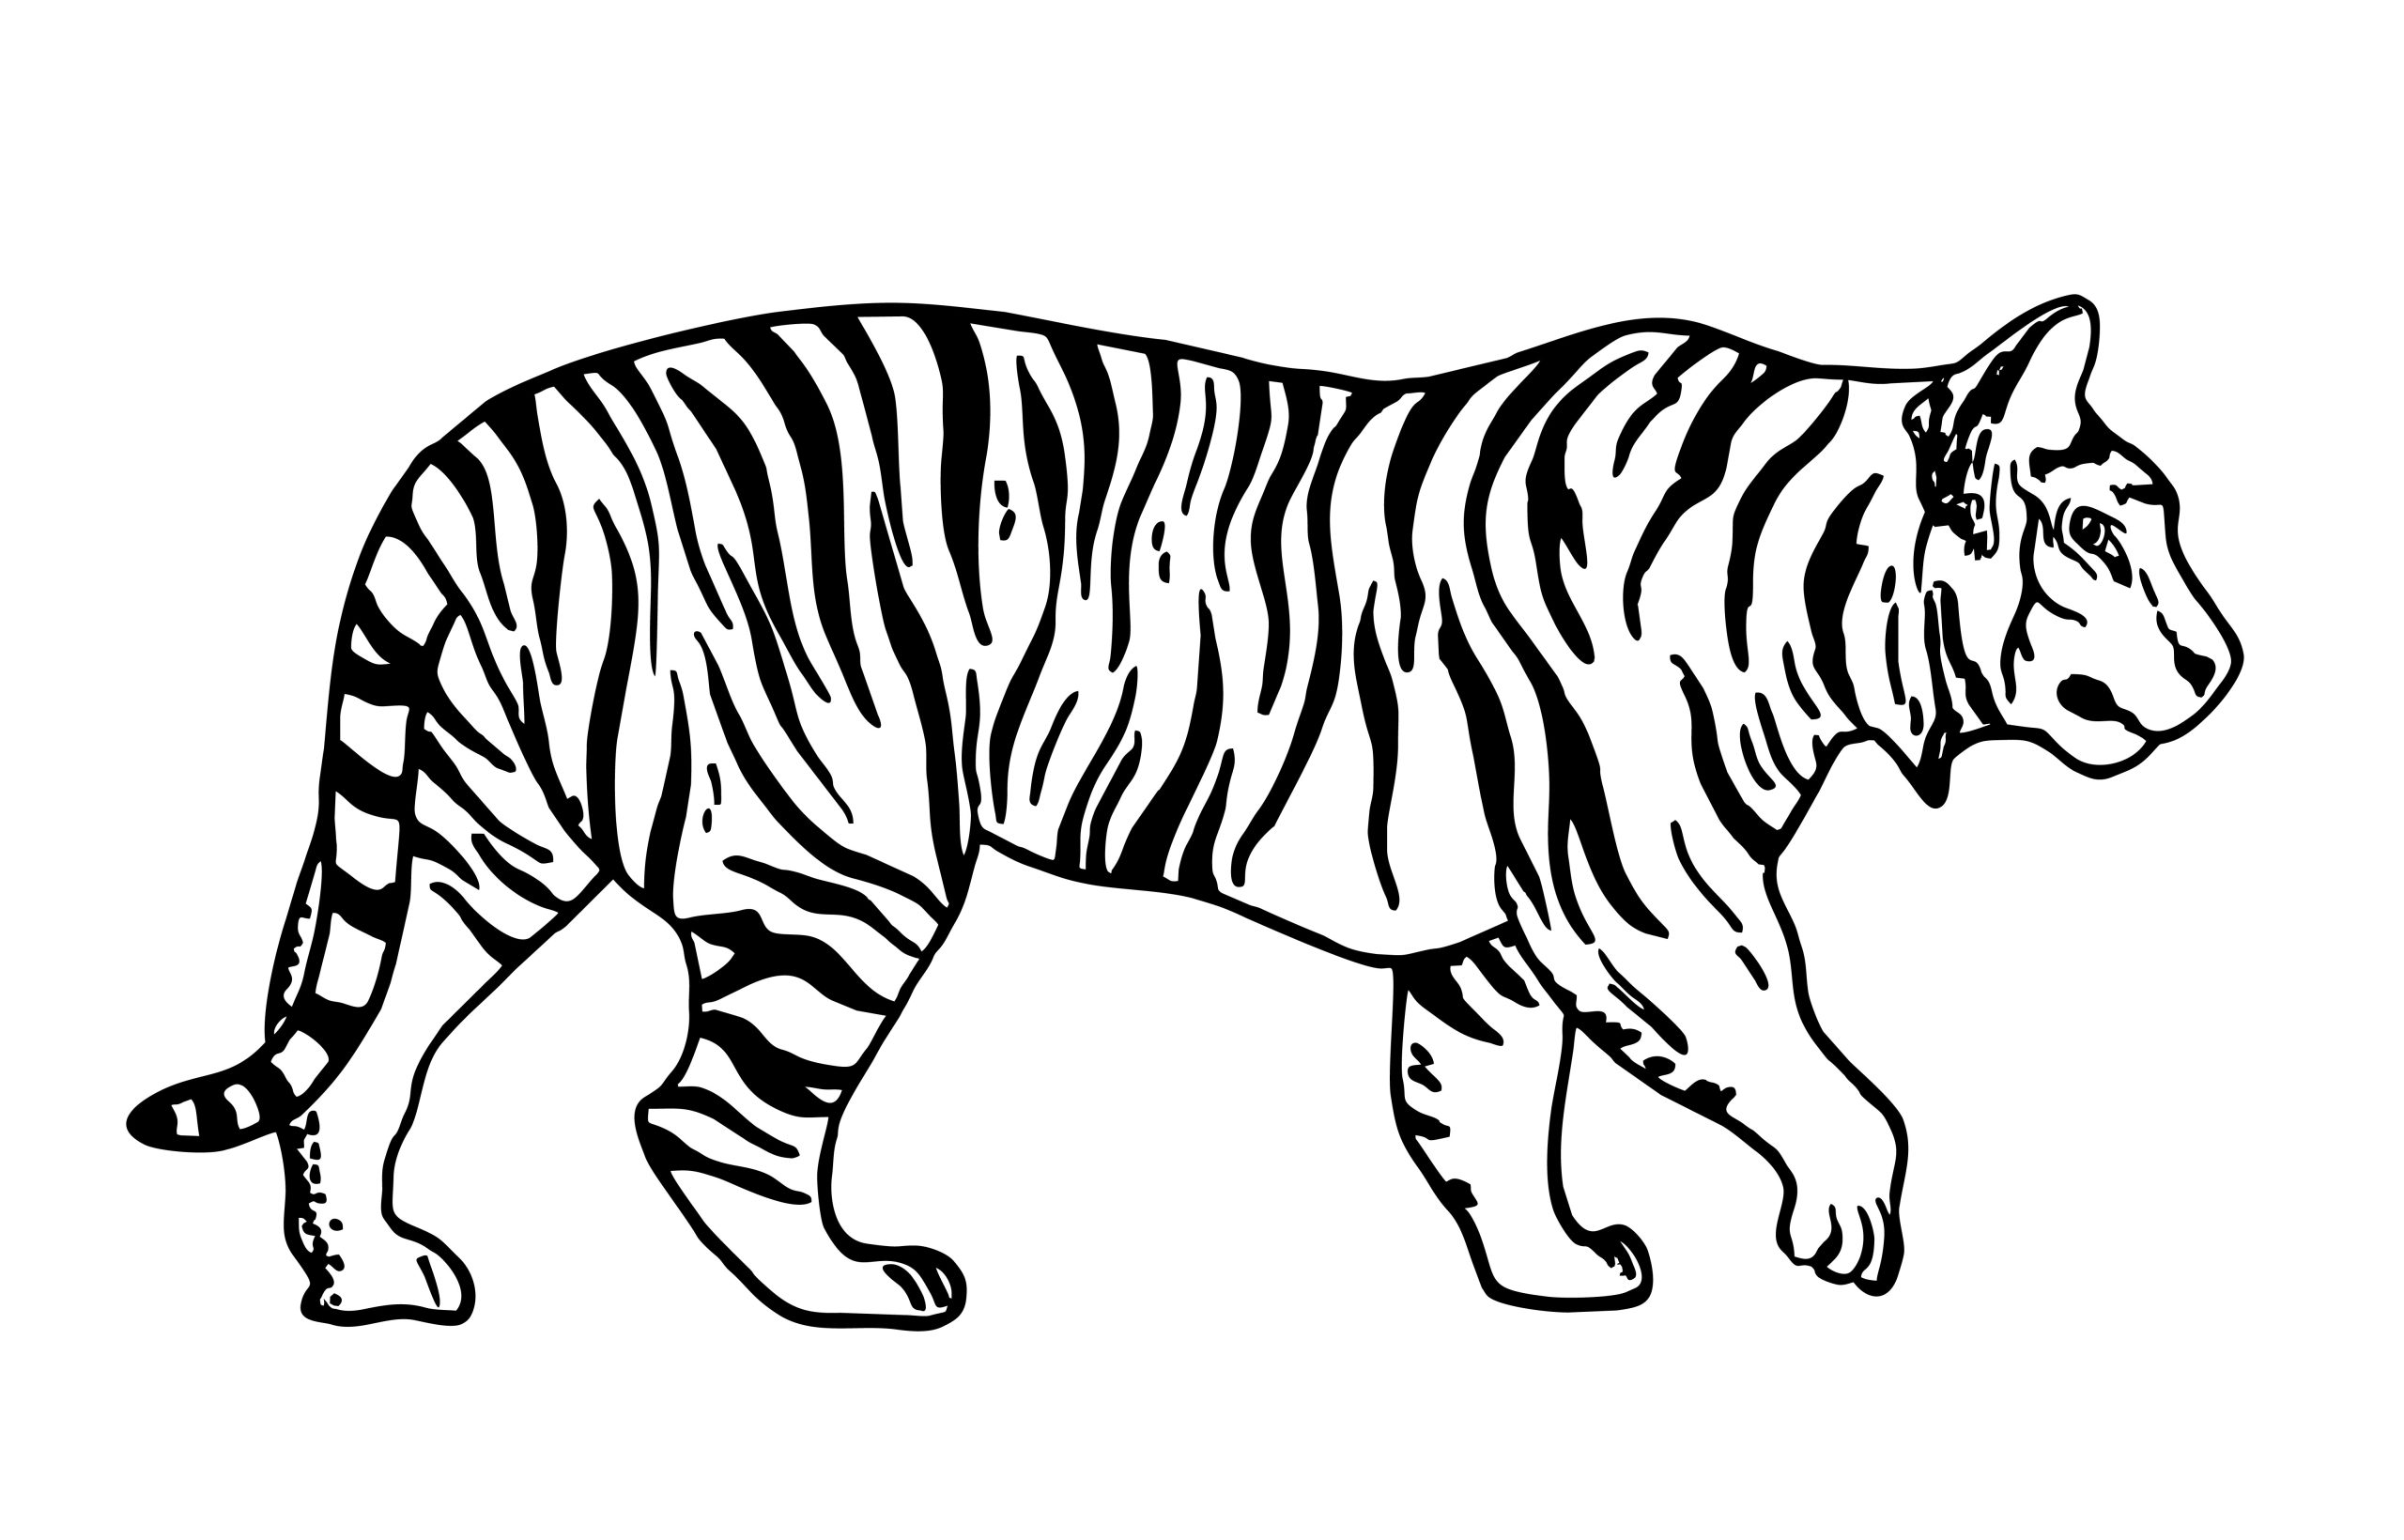 Tigre-caminhando